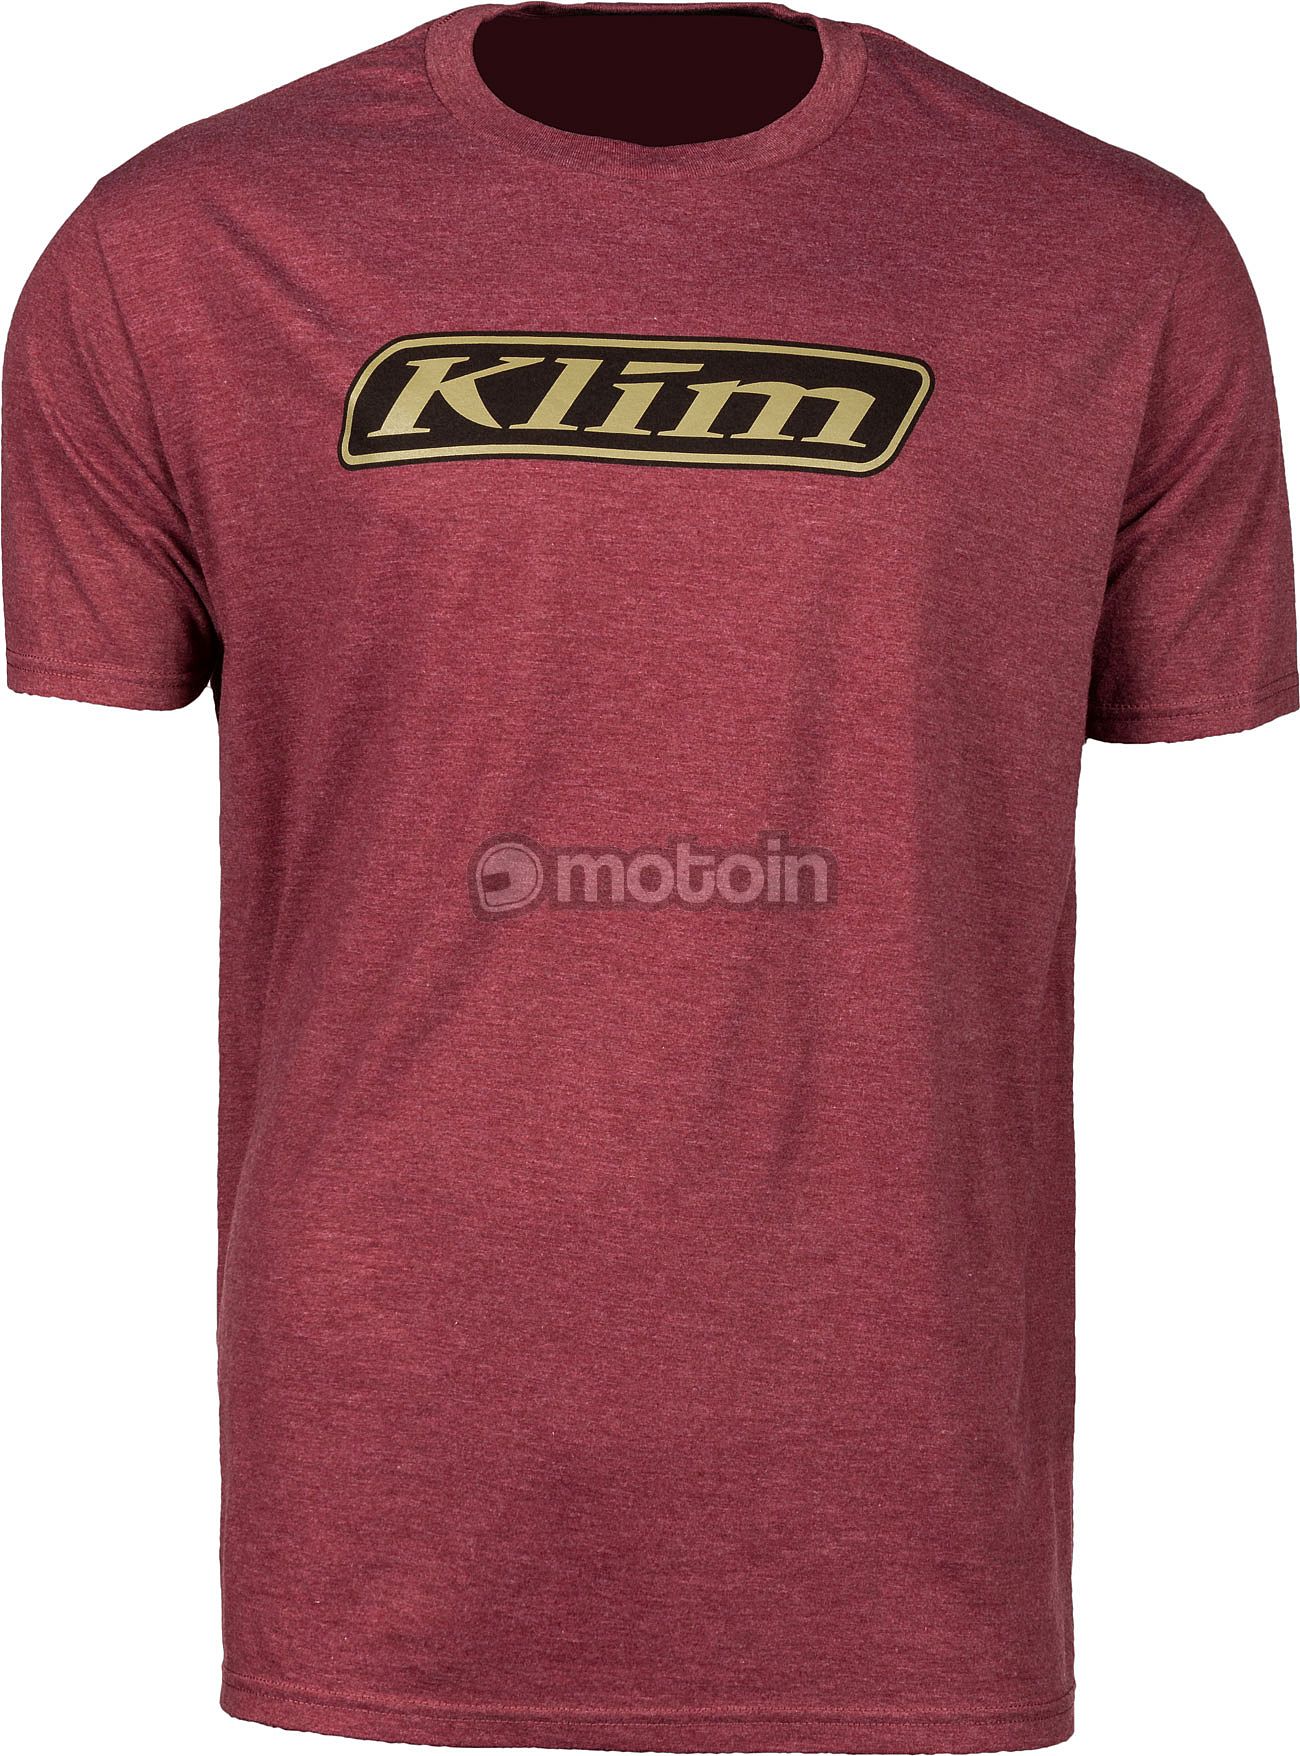 Klim Baja, t-shirt